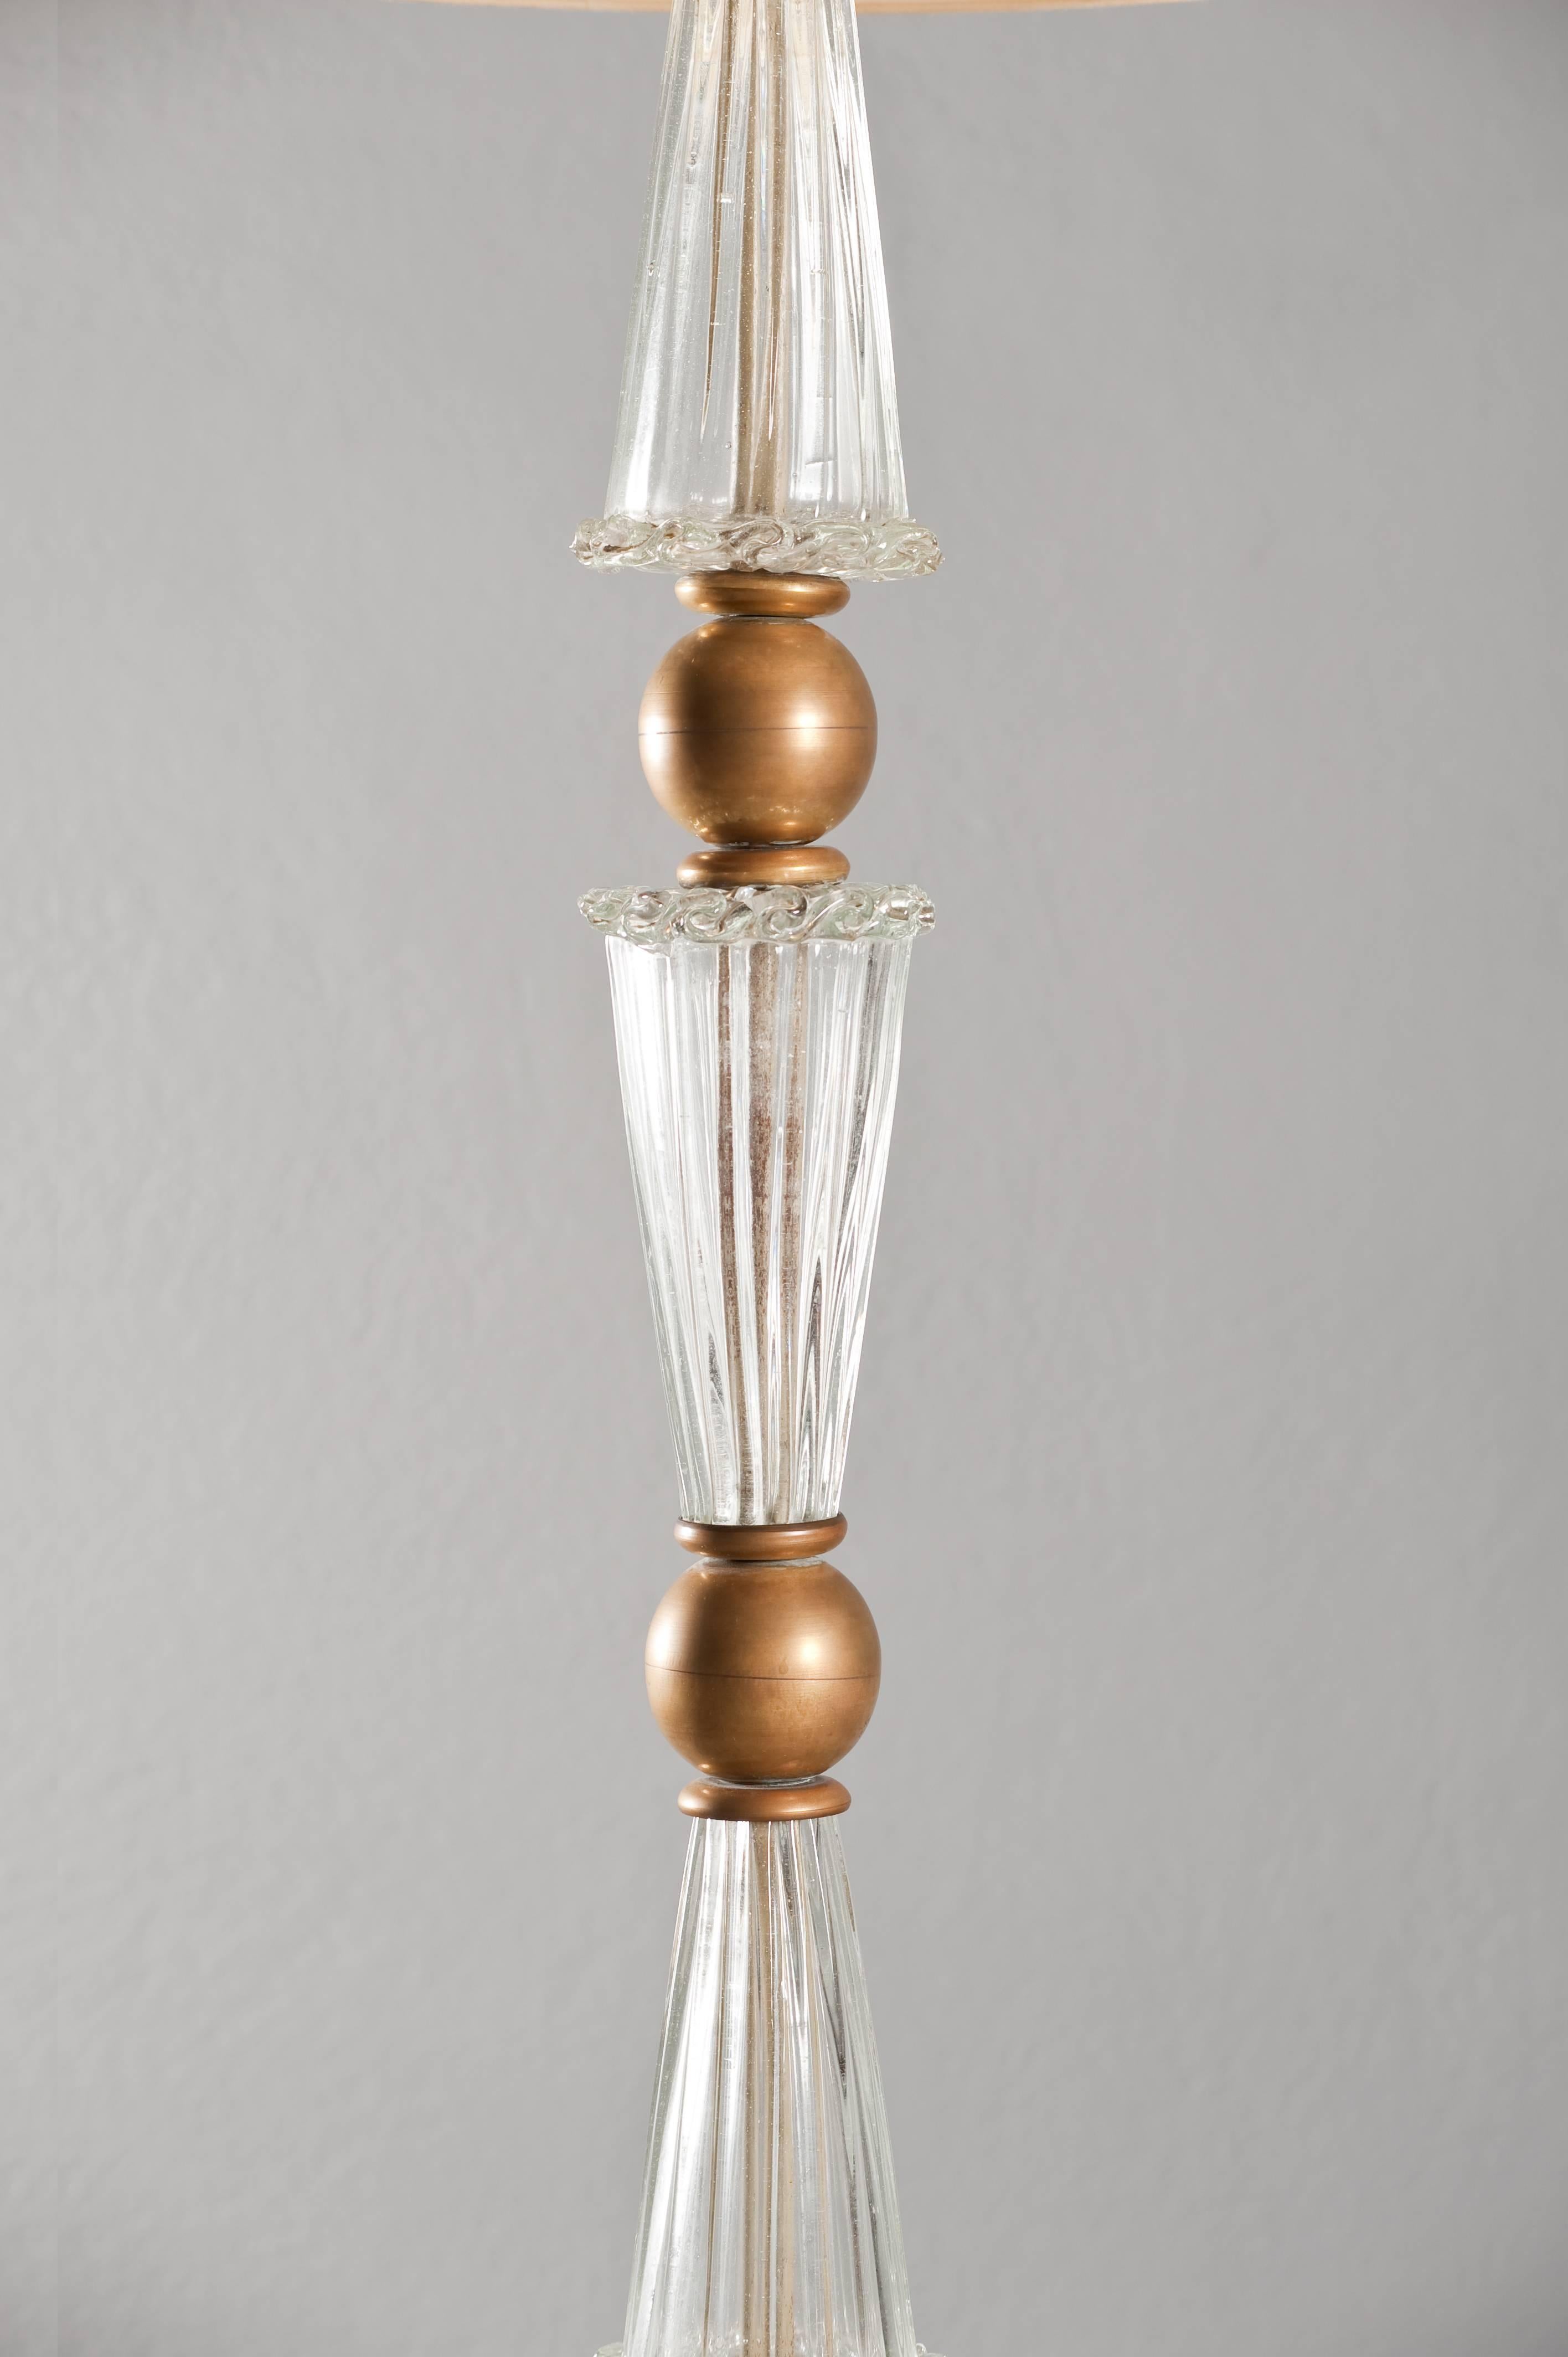 Stunning brass and handblown Murano glass floor lamp attributed to Barovier.